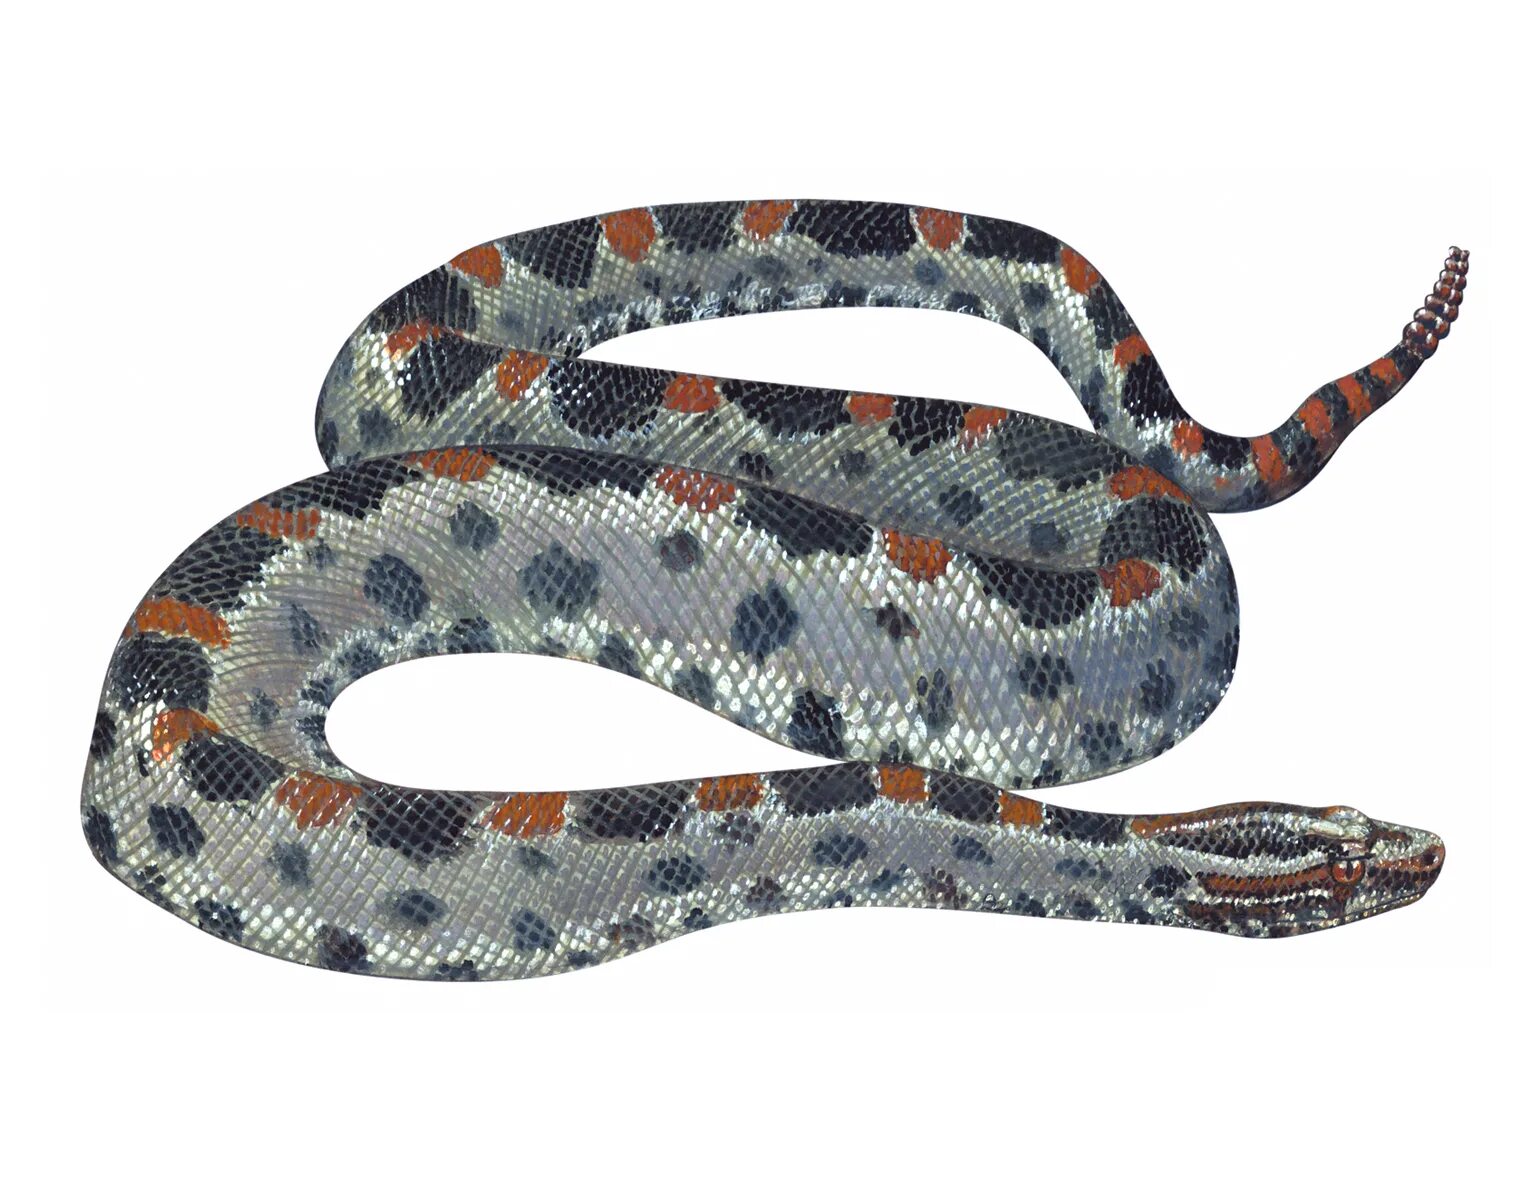 Pygmy Rattlesnake. Мини сумки бочка рептилия или змея.